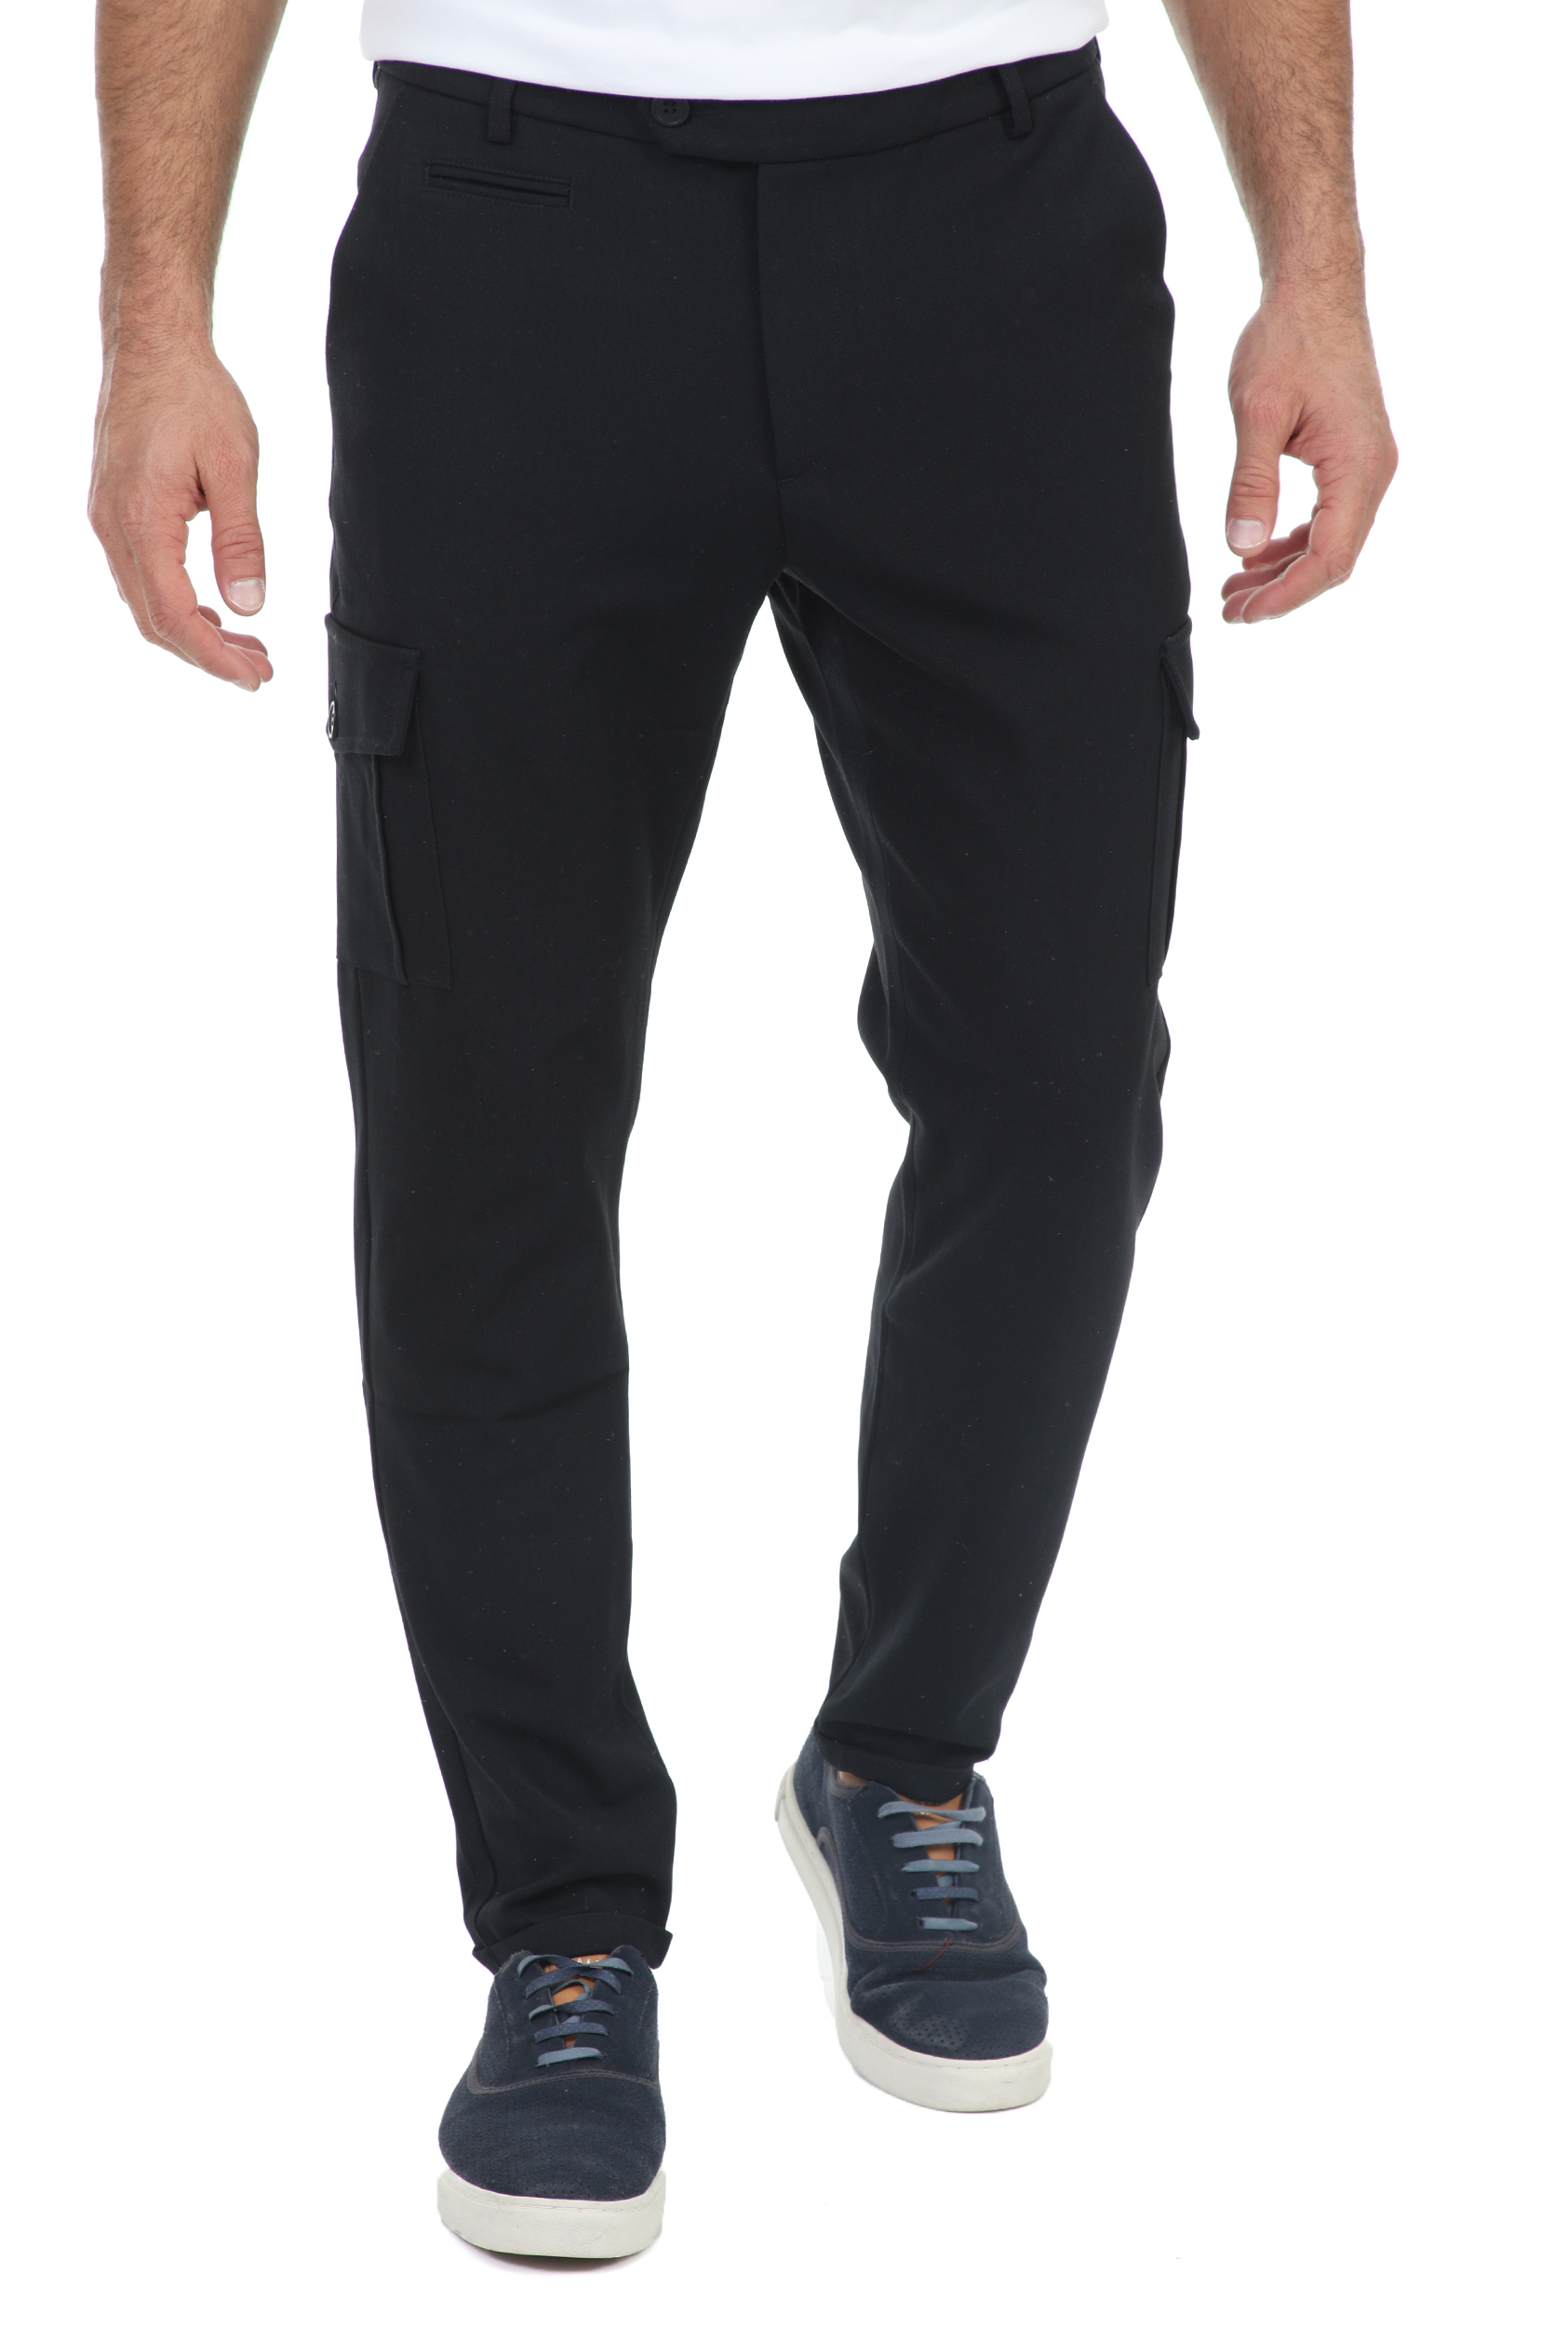 Ανδρικά/Ρούχα/Παντελόνια/Cargo LES DEUX - Ανδρικό παντελόνι LES DEUX Como Cargo μαύρο